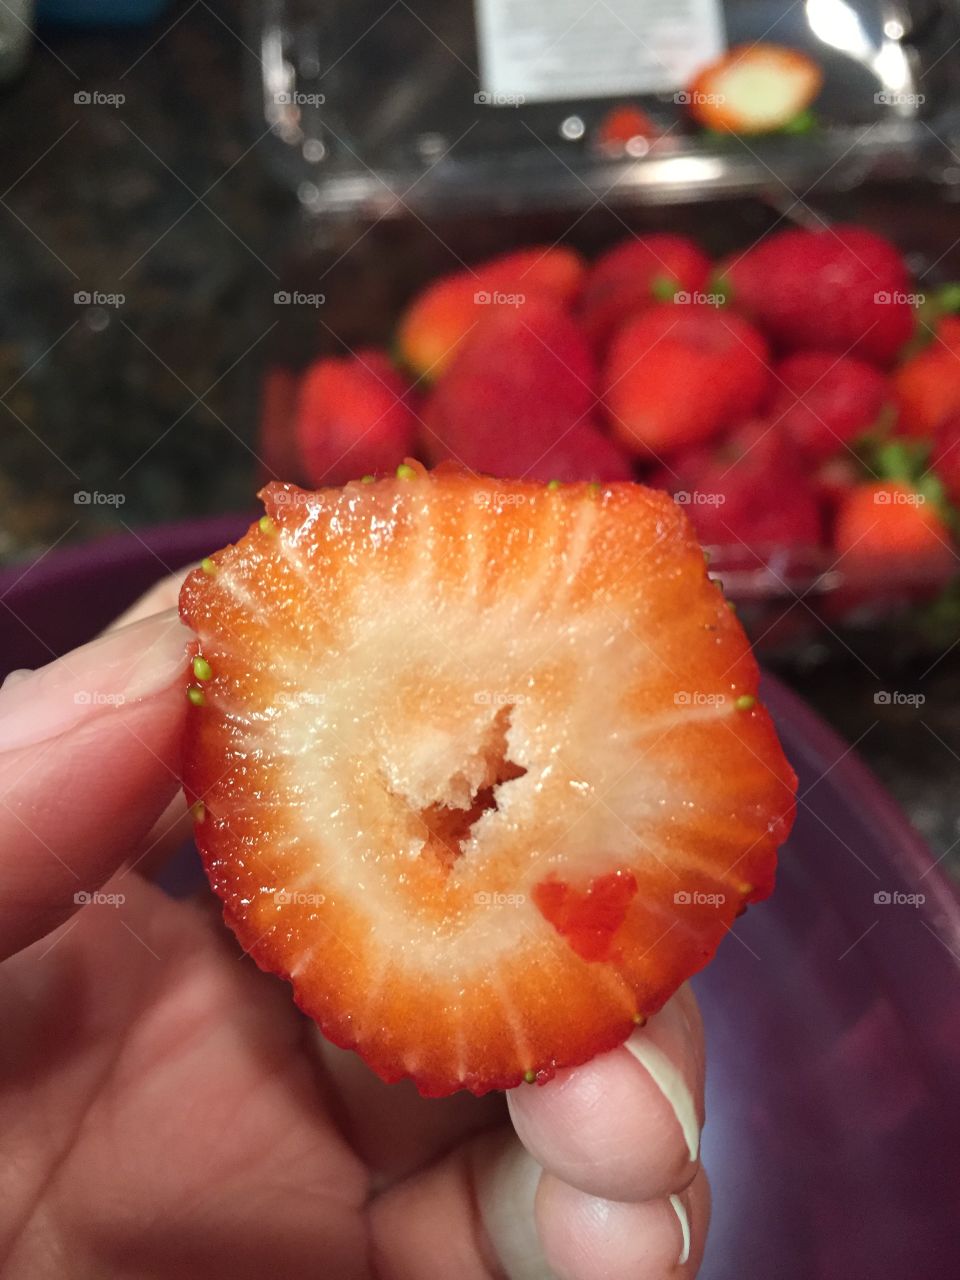 Love strawberries 